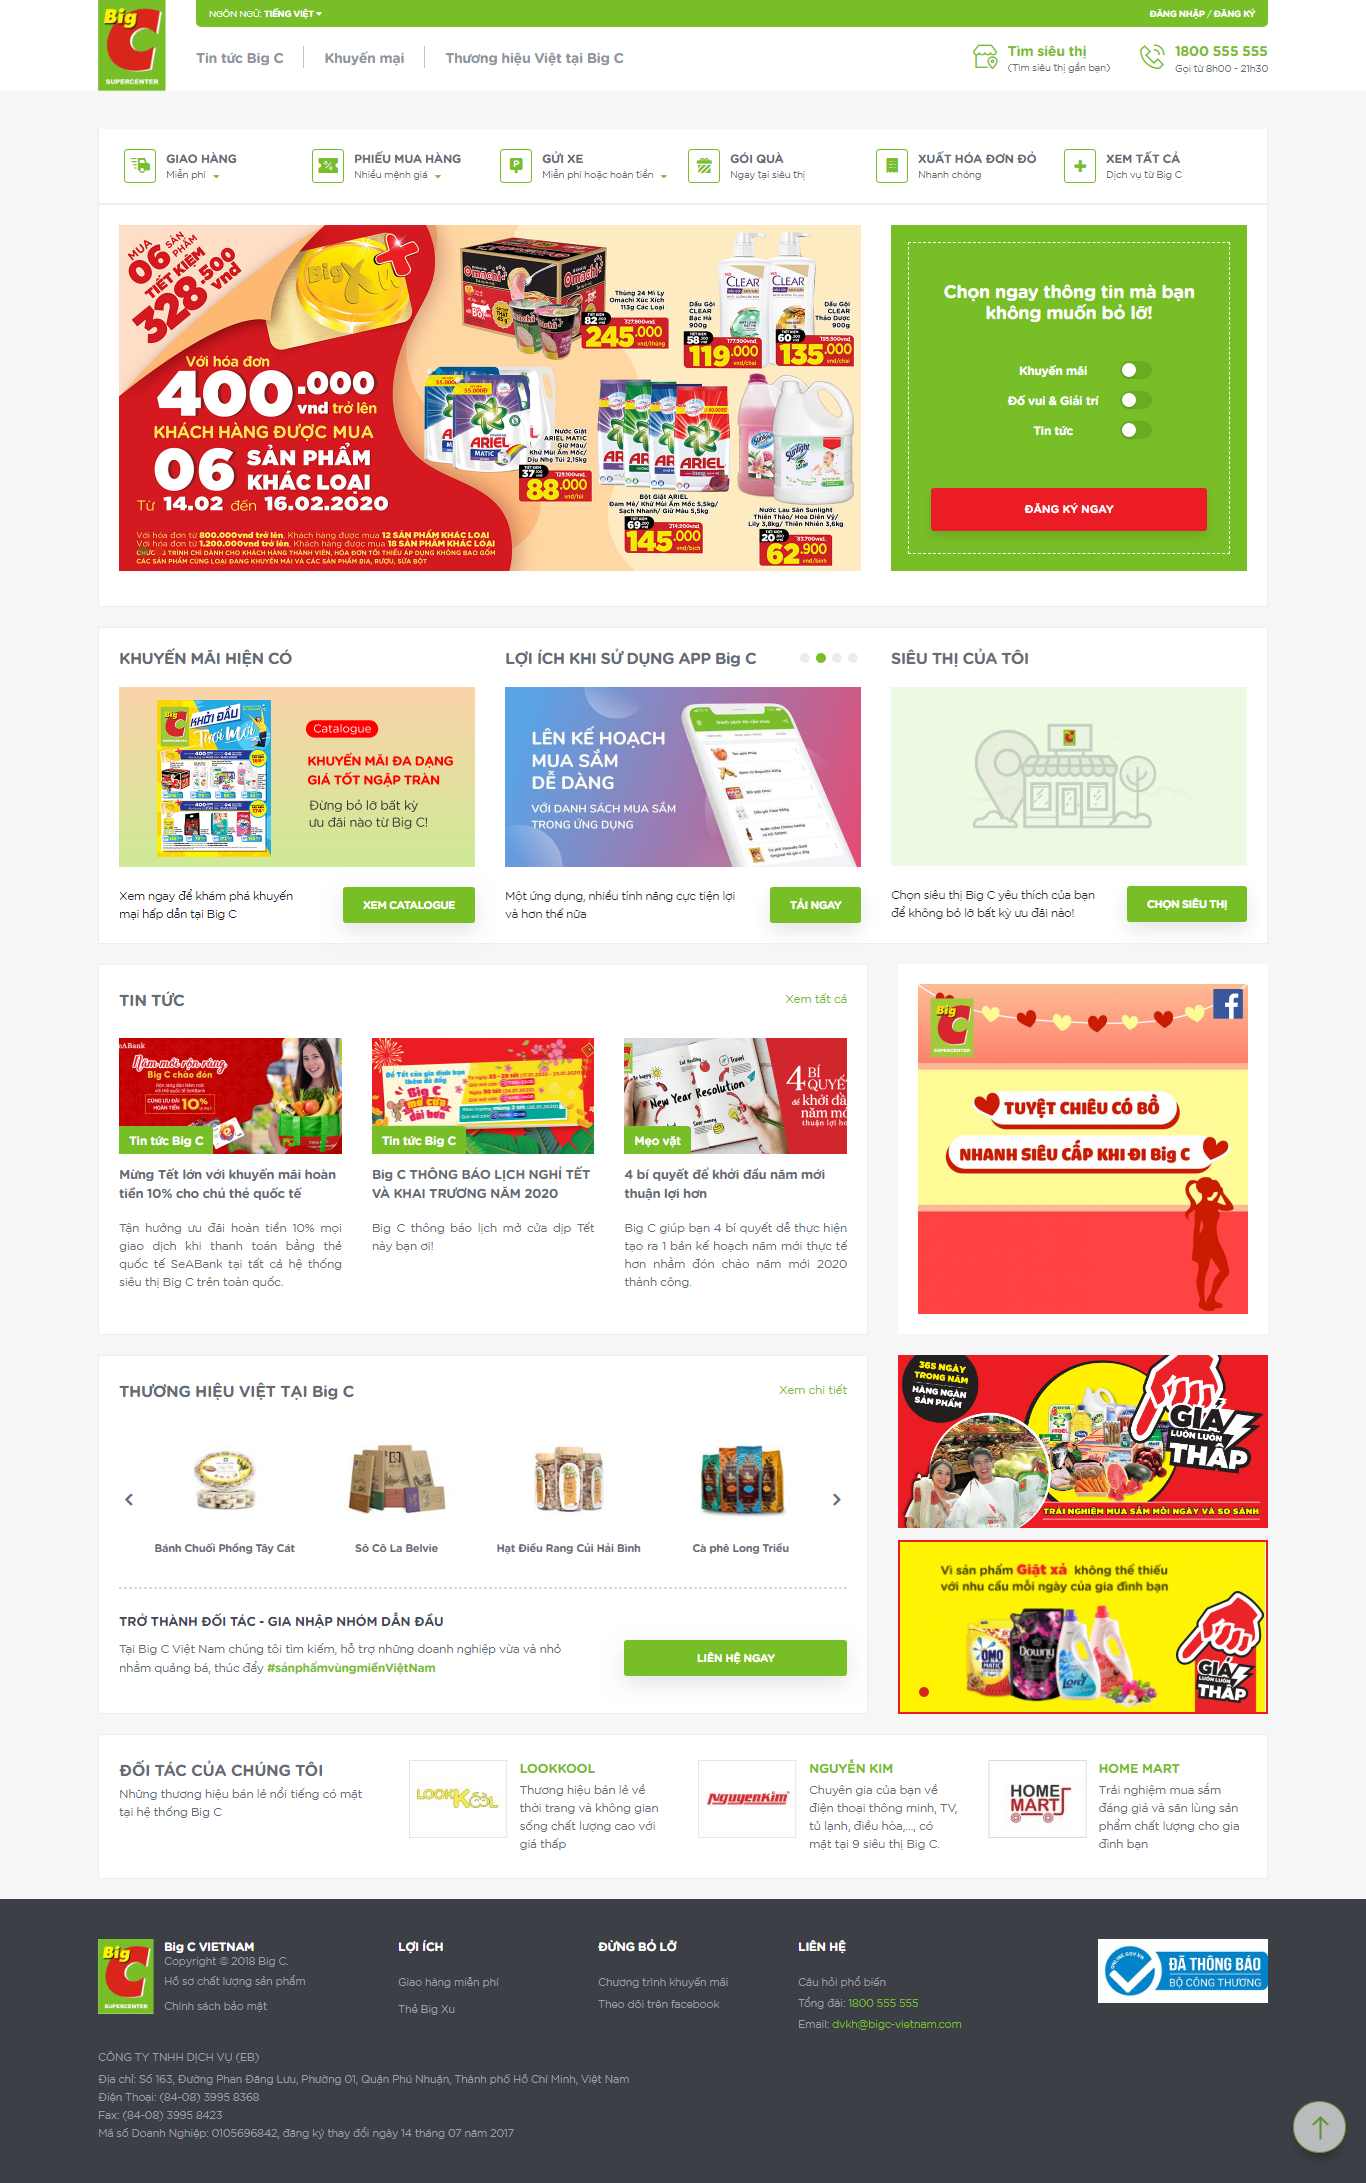 Thiết kế Website bán hàng - www.bigc.vn